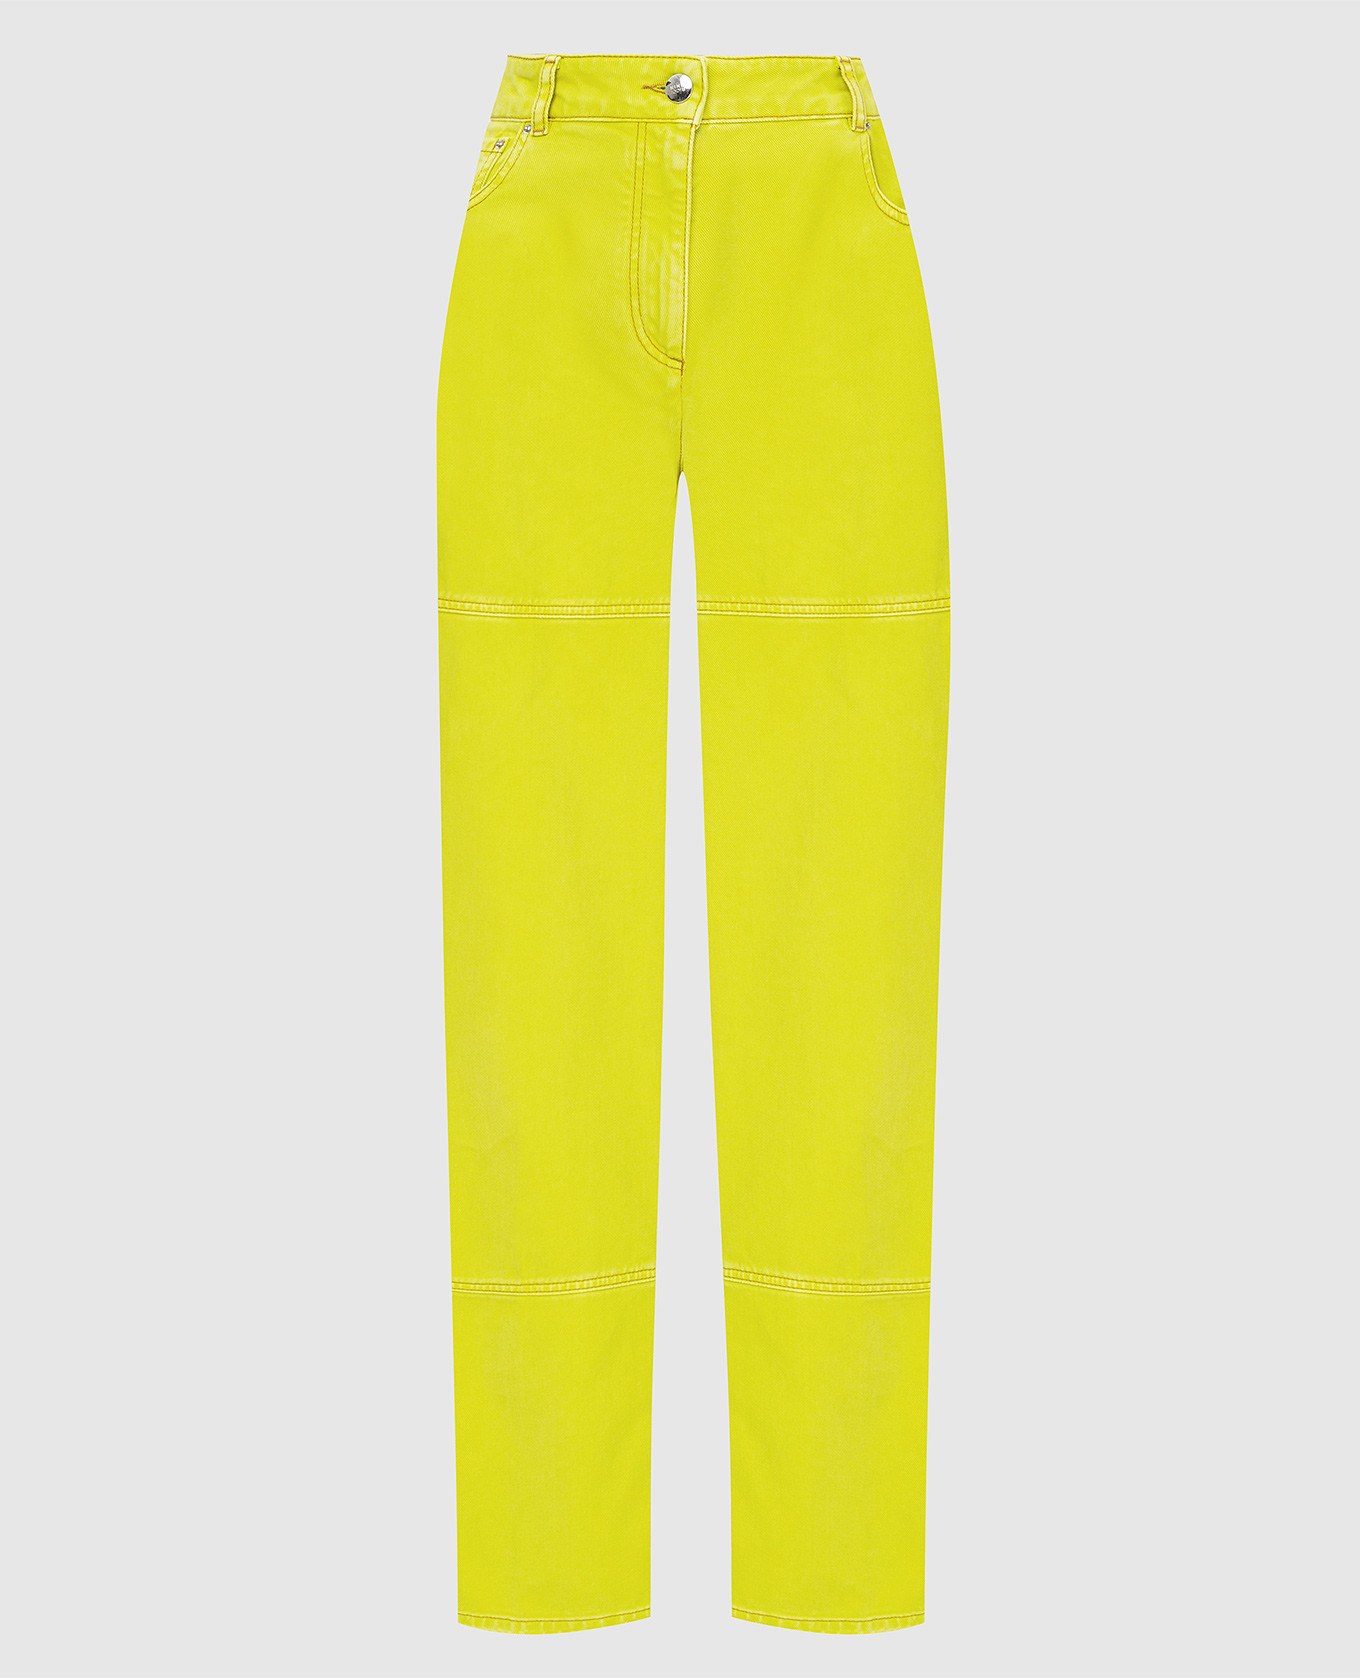 Желтые джинсы с вышивкой логотипа